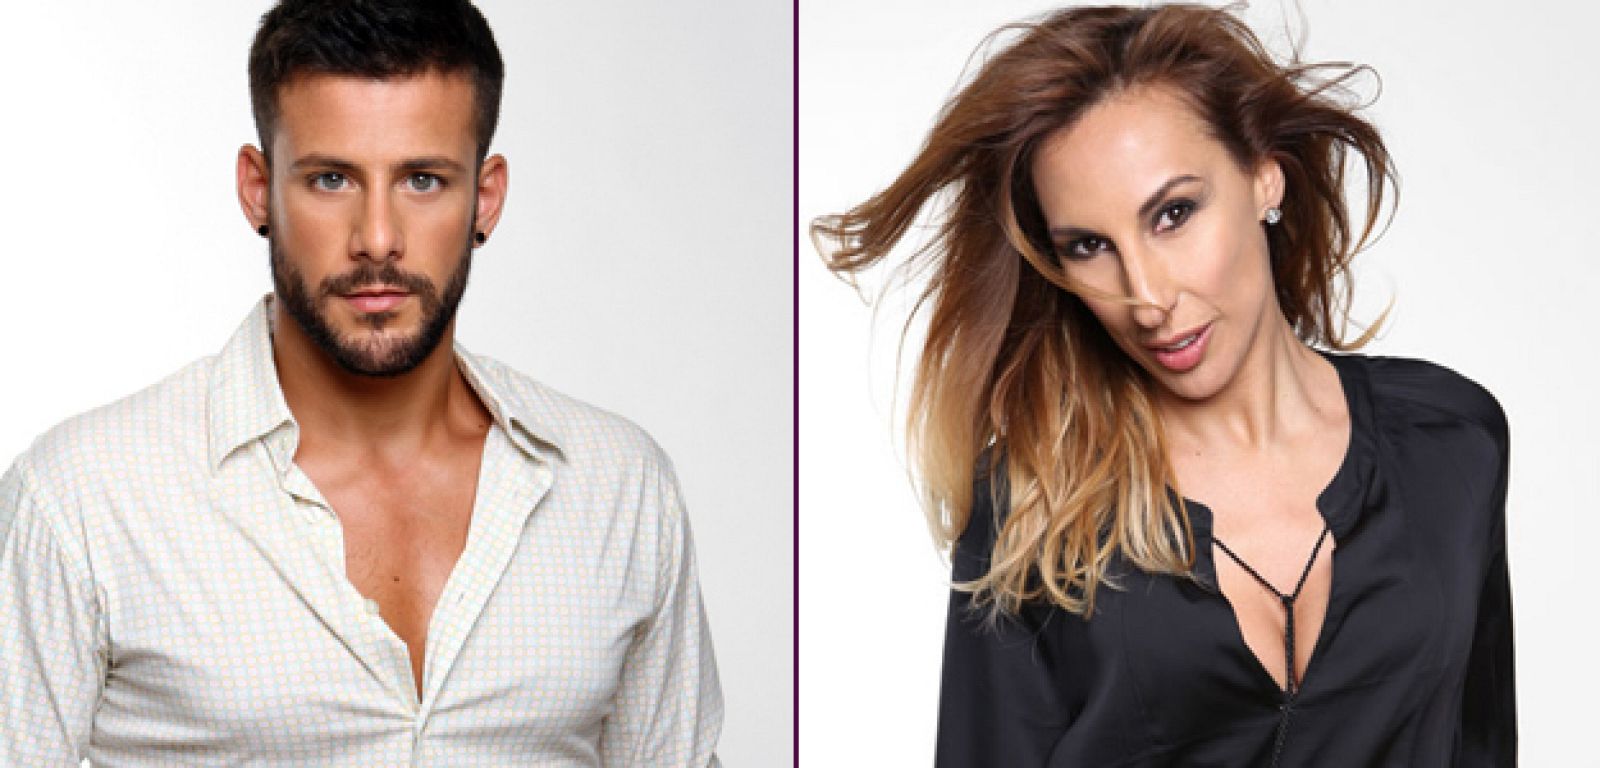 Giuseppe di Bella y Miryam Benedited invitados esta semana en '#Edurnevision'